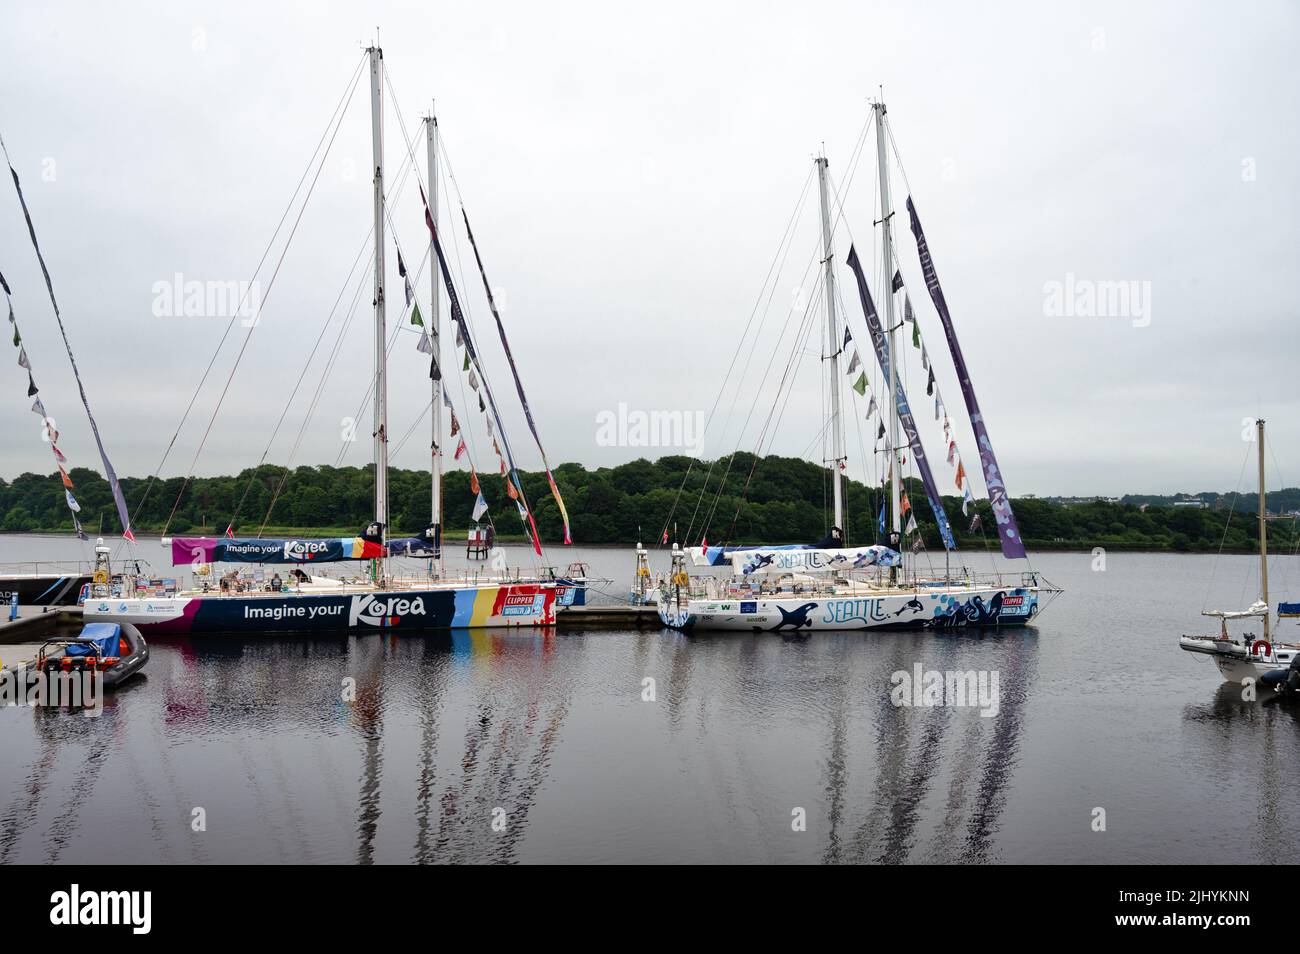 Derry, Royaume-Uni- 19 juillet 2022: Le Clipper Round le monde Yachts au Festival du Derry Clipper Banque D'Images